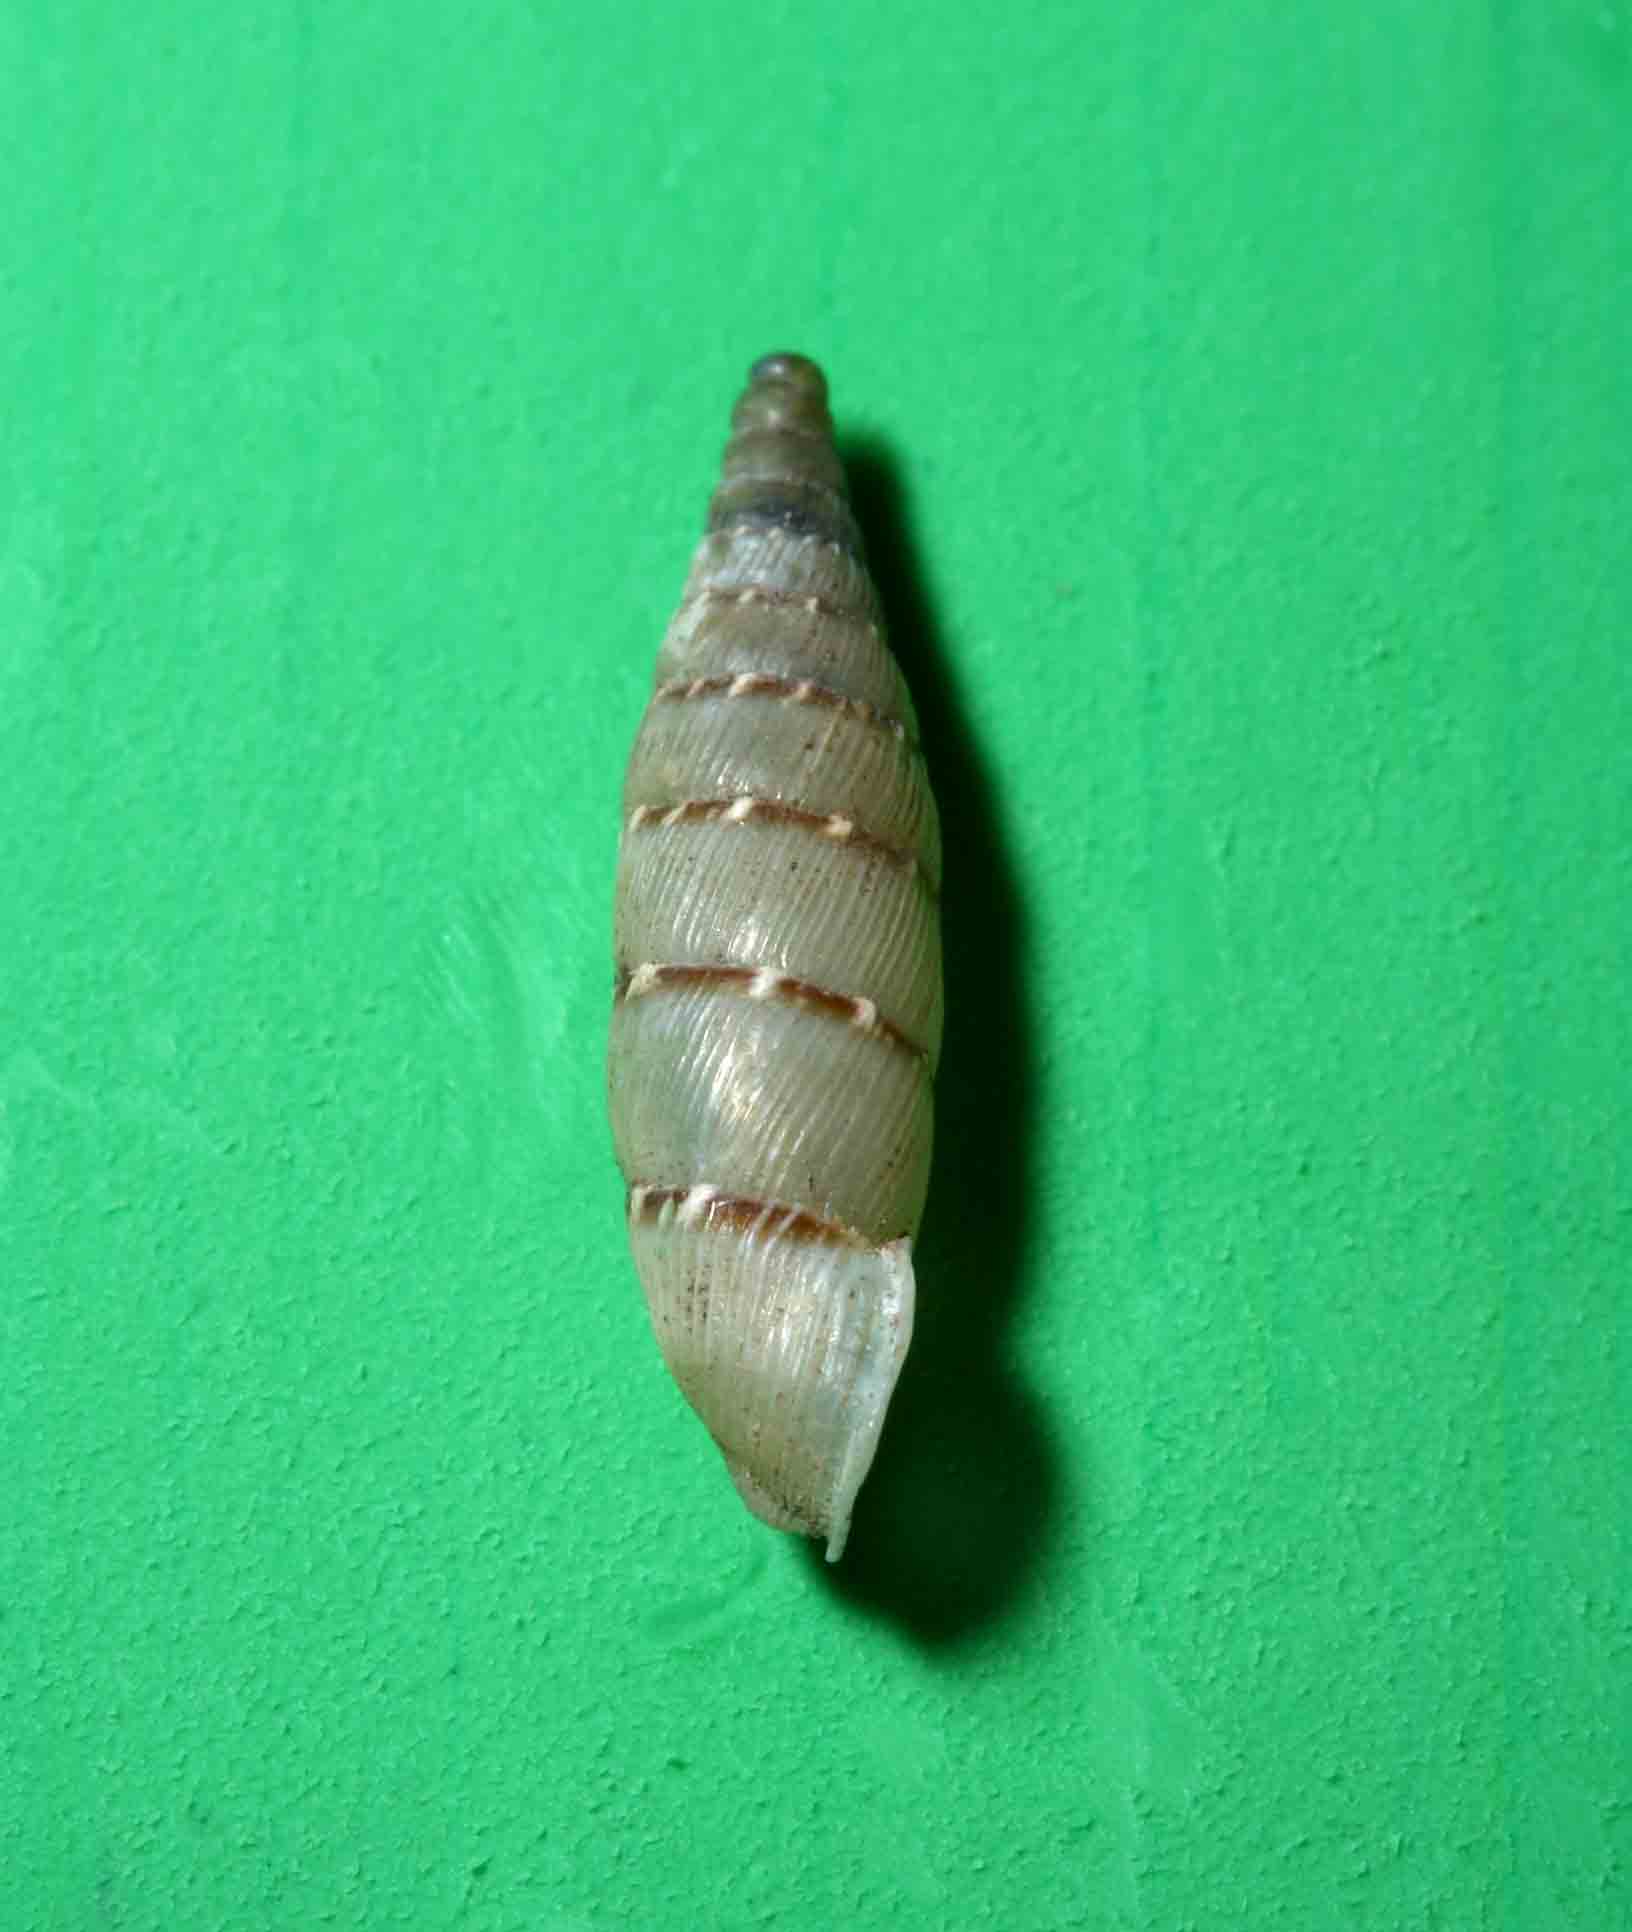 Papillifera papillaris (O.F. Mller, 1774) - Monte Soratte